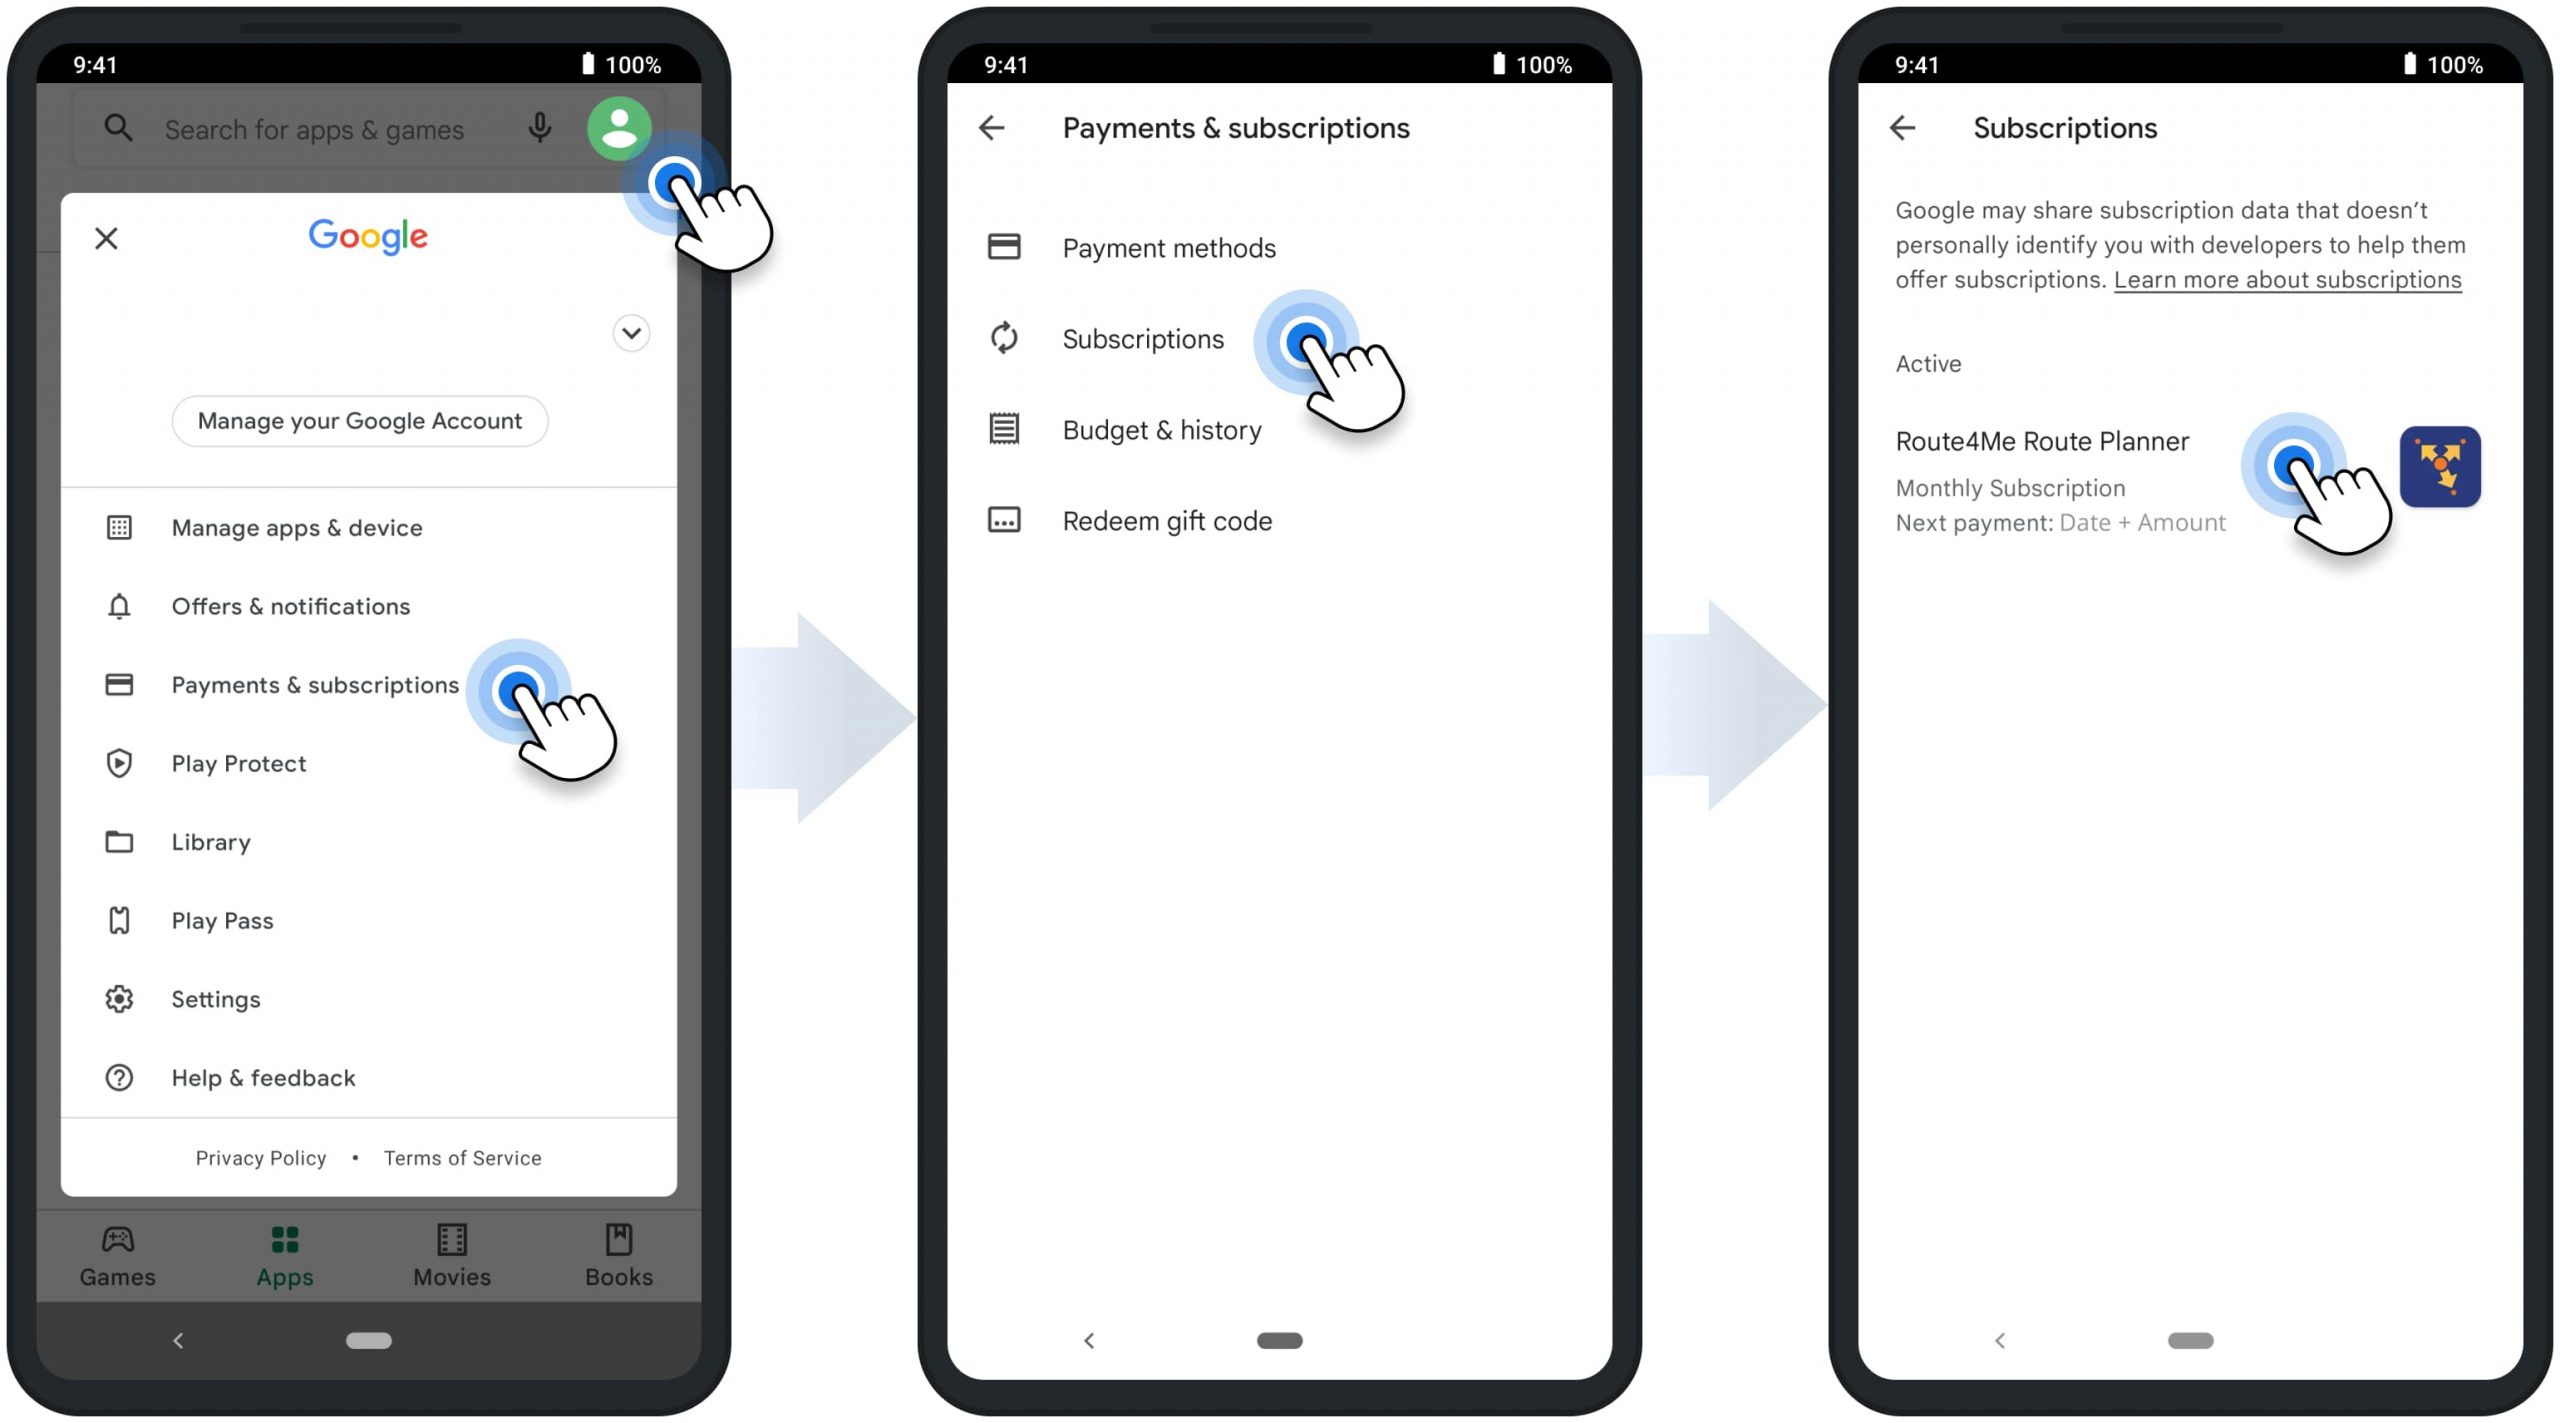 Administrar la suscripción de Route4Me en un teléfono inteligente o tableta Android